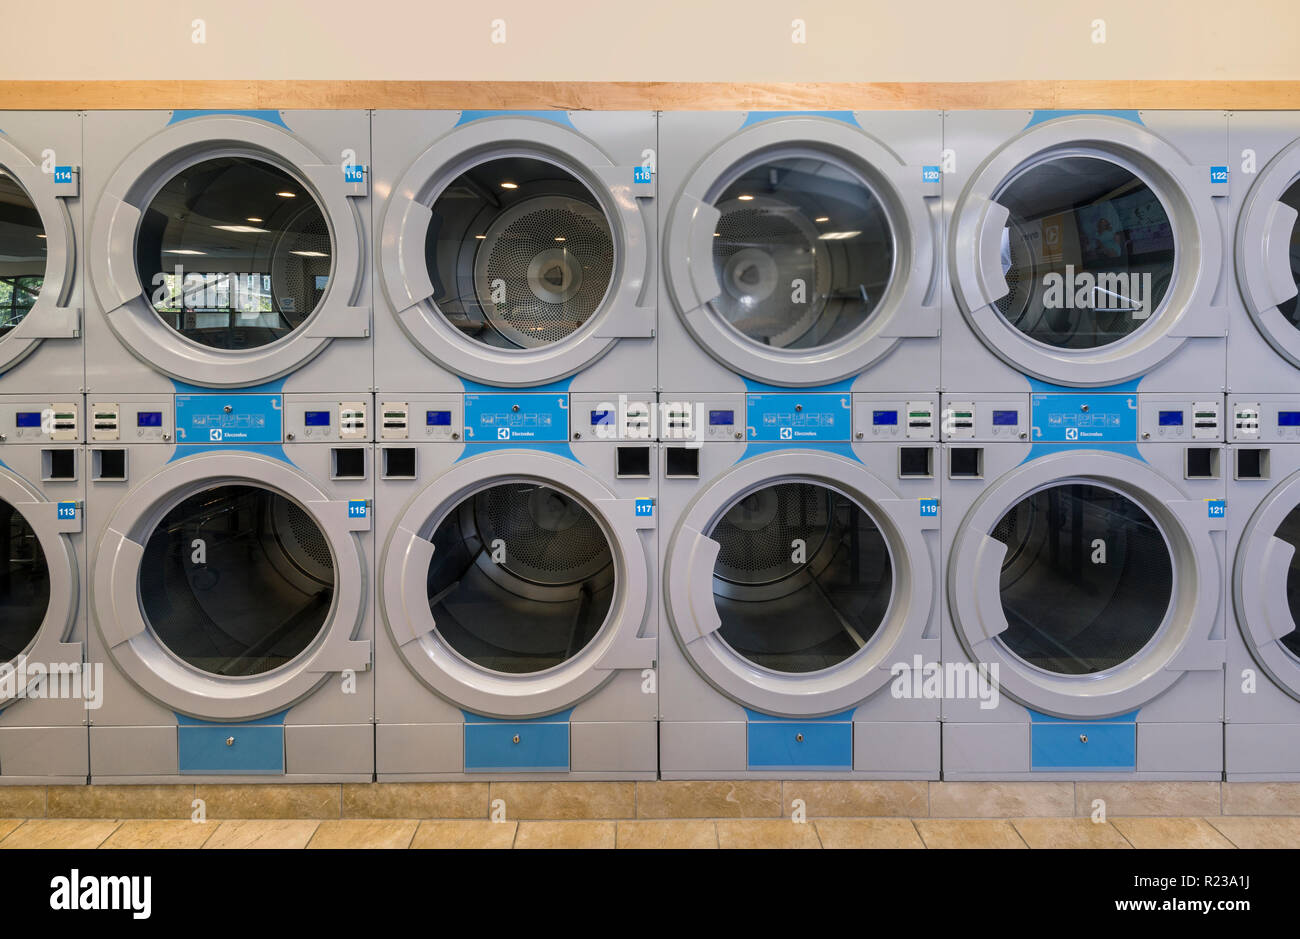 Las máquinas de lavandería, EE.UU. Foto de stock